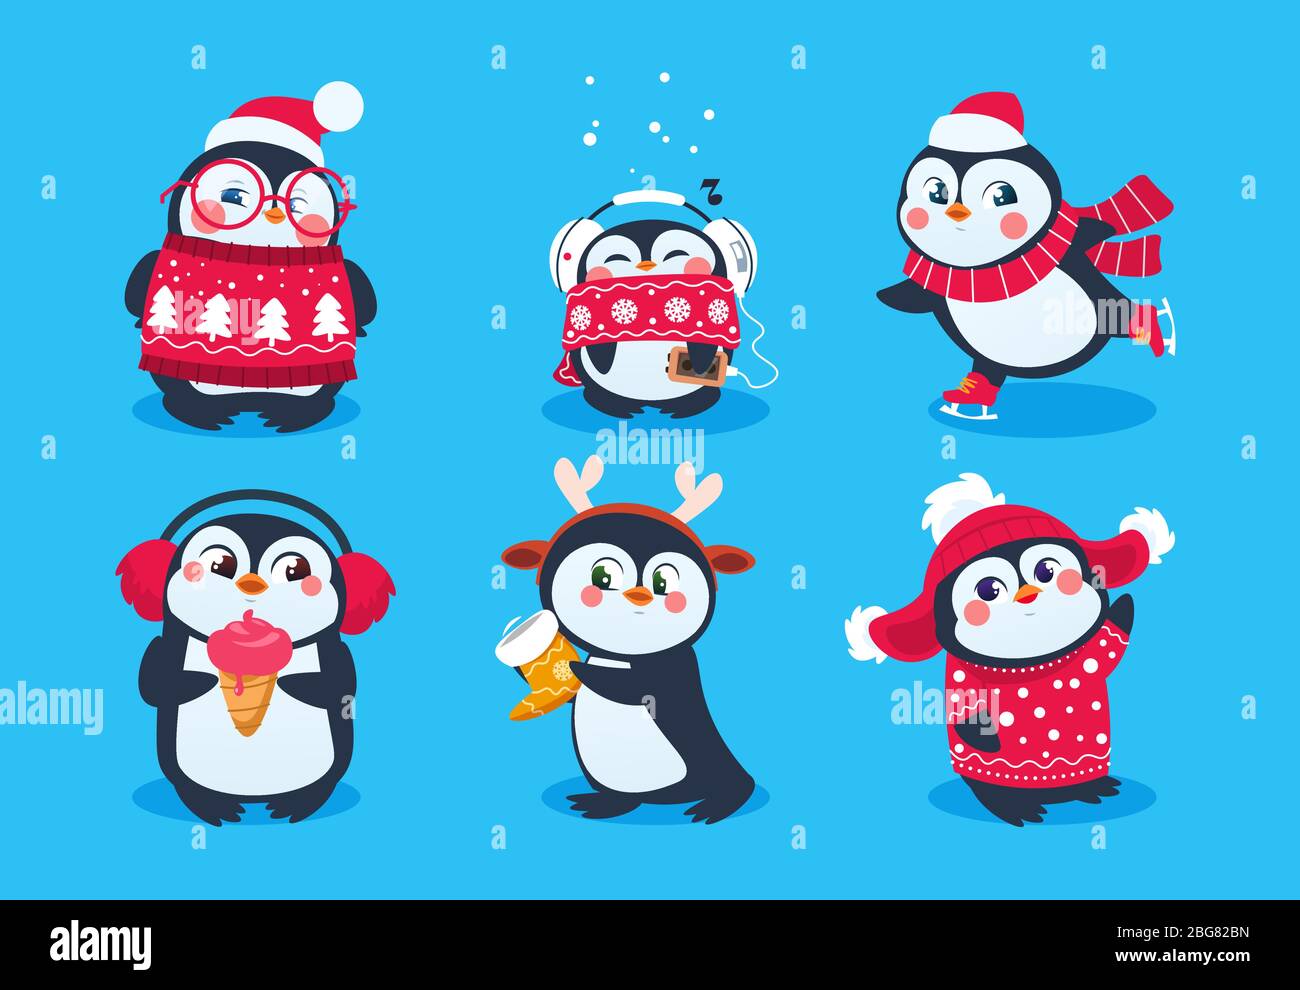 Pingouin de Noël. Des animaux rigoles, de jolis petits pingouins personnages de dessin animé en hiver chapeau. Ensemble vectoriel isolé de péchots polaires dans le foulard rouge et l'illustration du chapeau Illustration de Vecteur